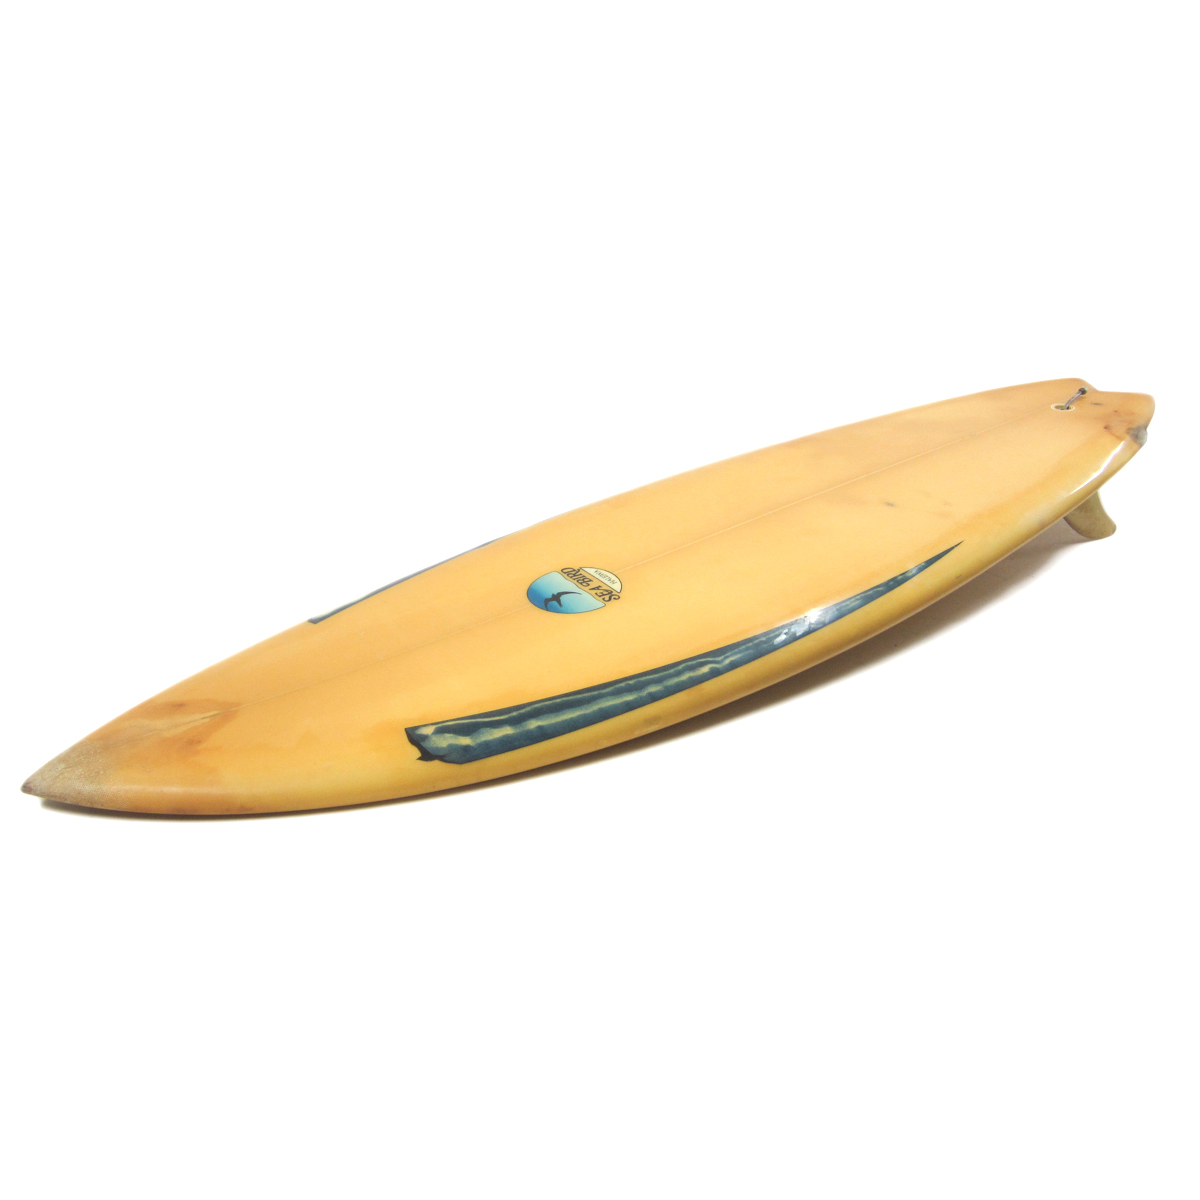 SEA BIRD SURFBOARD / 5'10 Vintage Twin